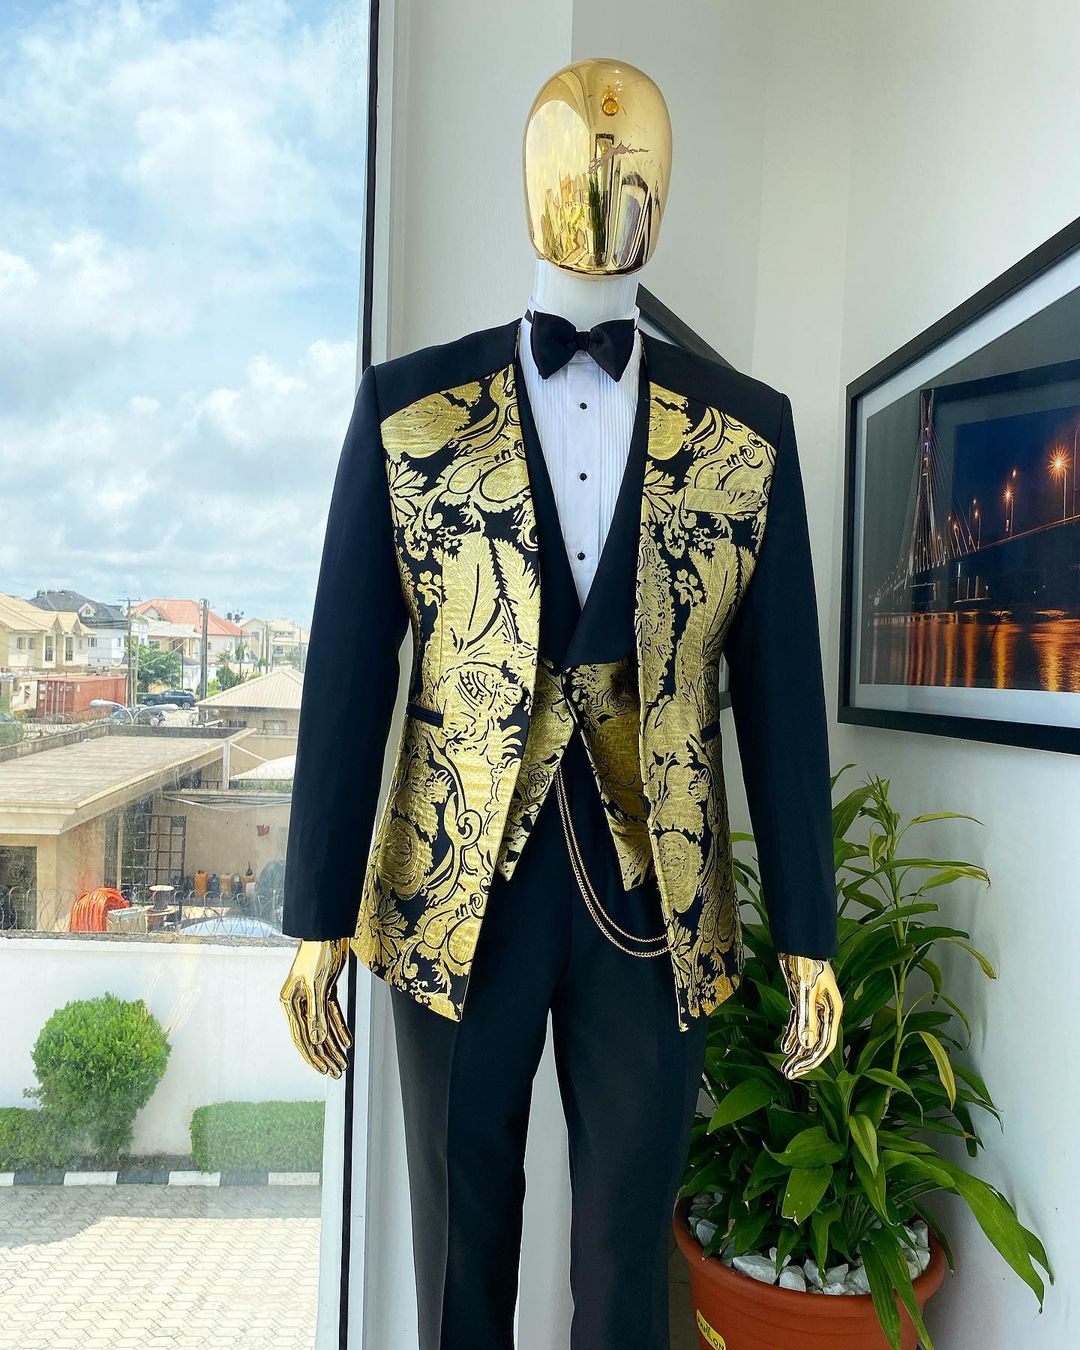 Jacquard Floral Suits for Men Wedding Black Gold Jacket Black Pant